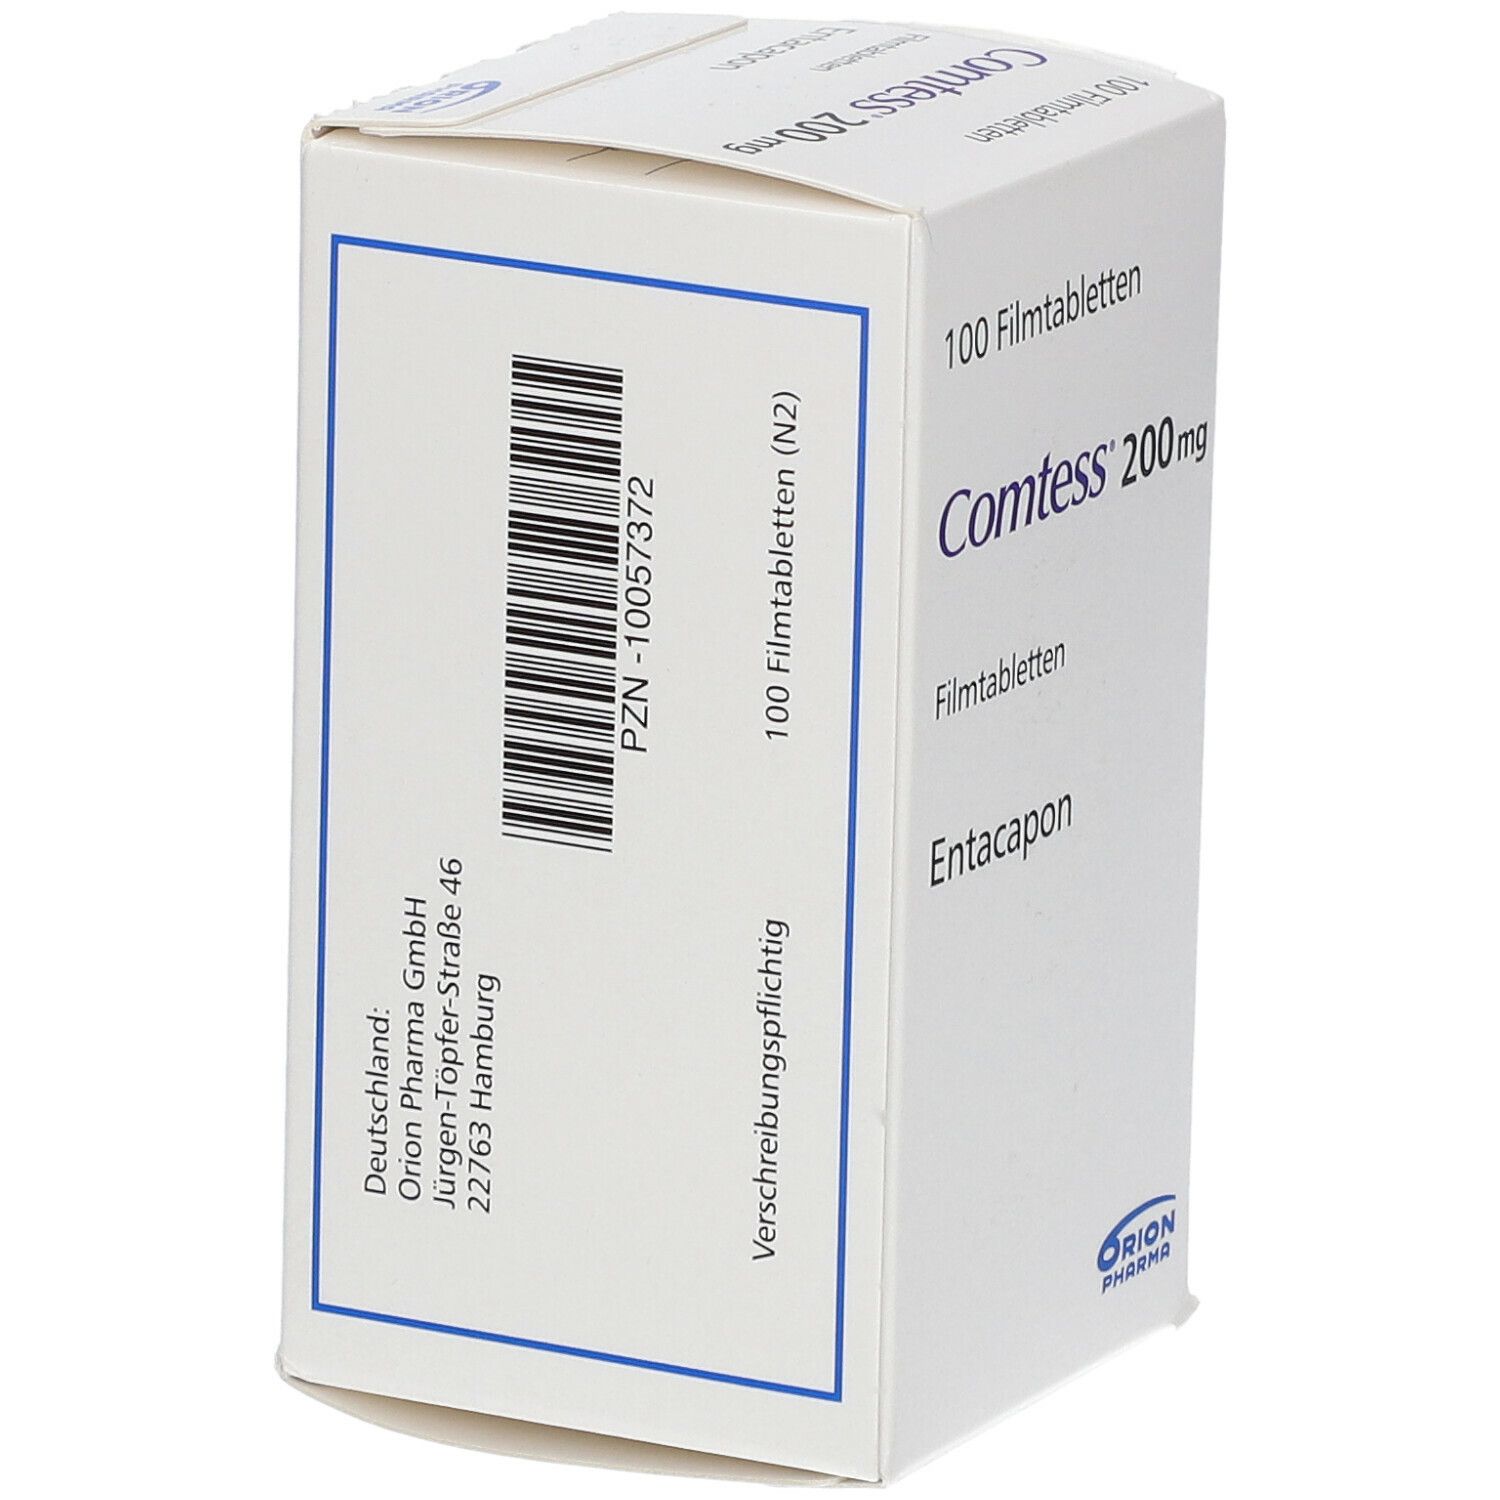 Comtess® 200 mg